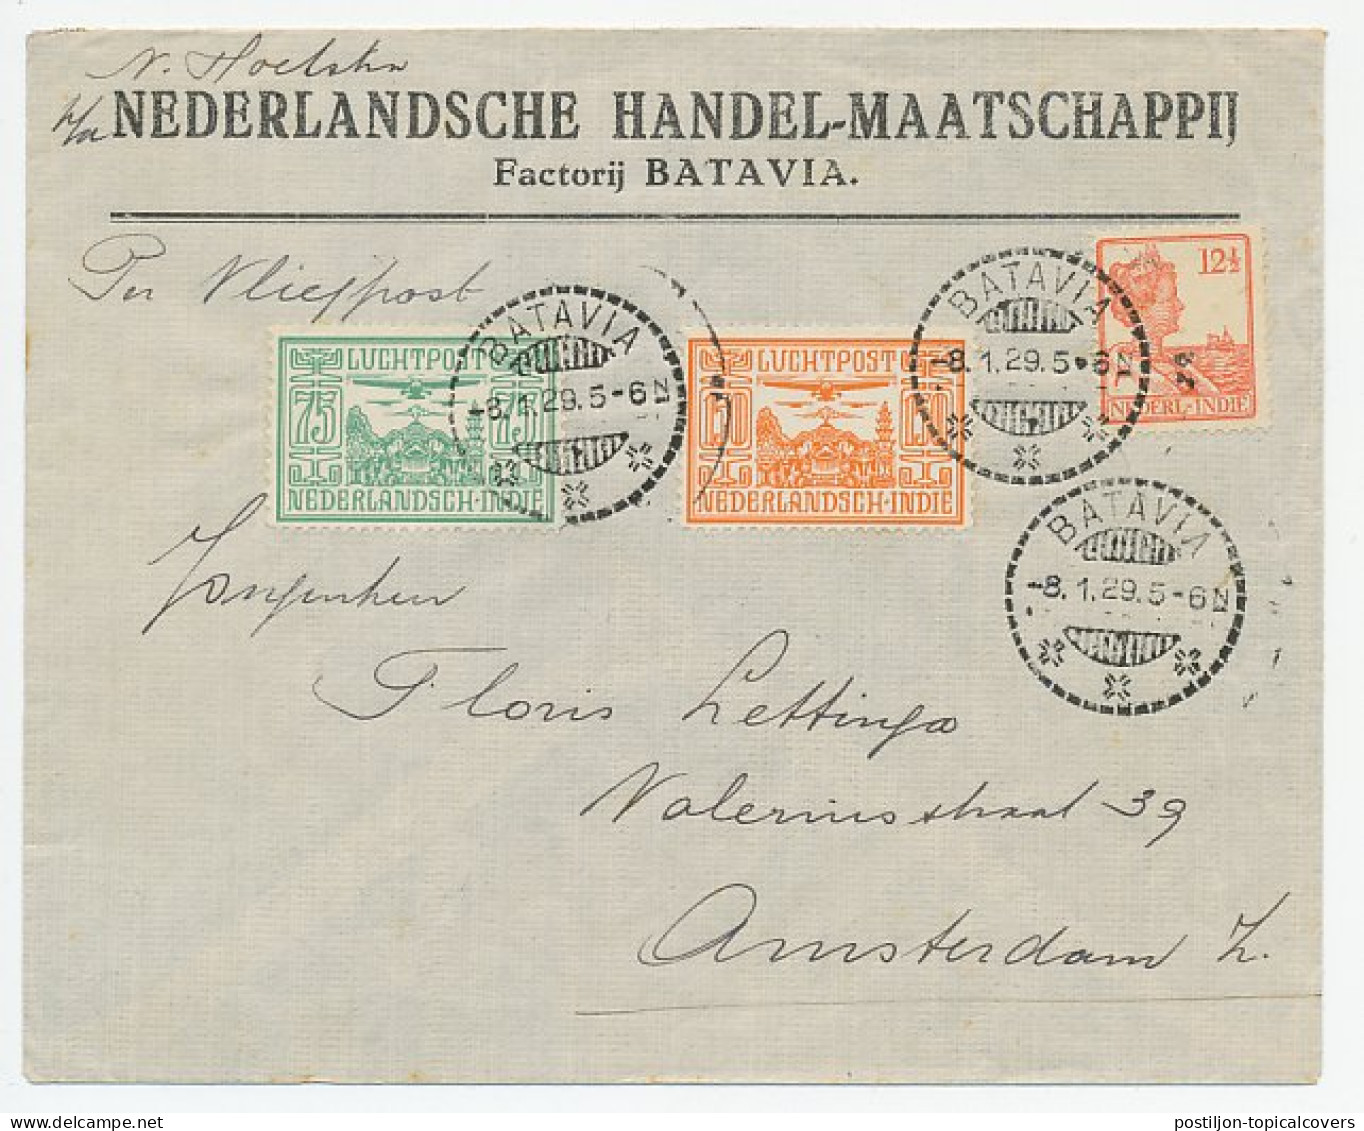 VH B 24 C Batavia Ned. Indie - Amsterdam 1929 - Ohne Zuordnung